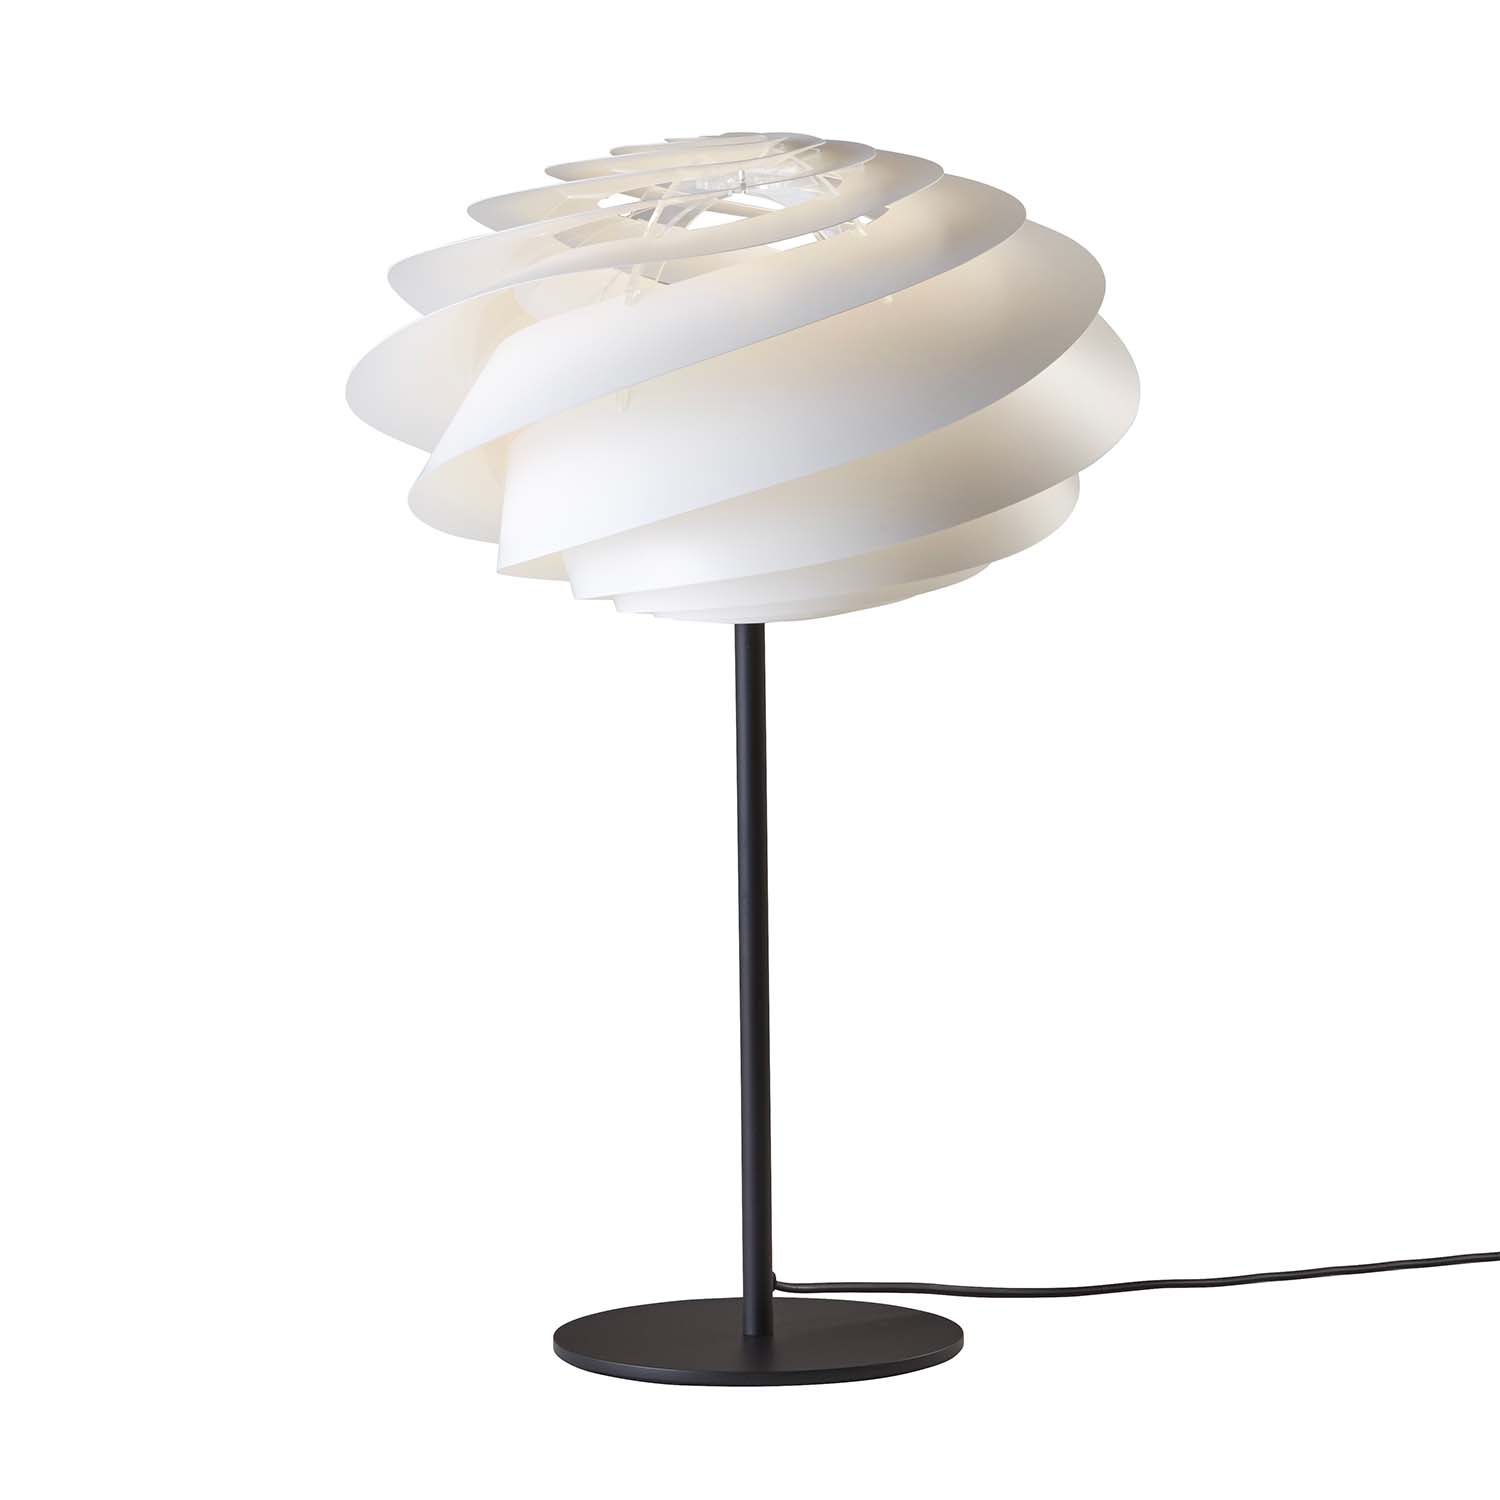 SWIRL Table - Weiße und schwarze Spiraltischlampe, Designerkreation